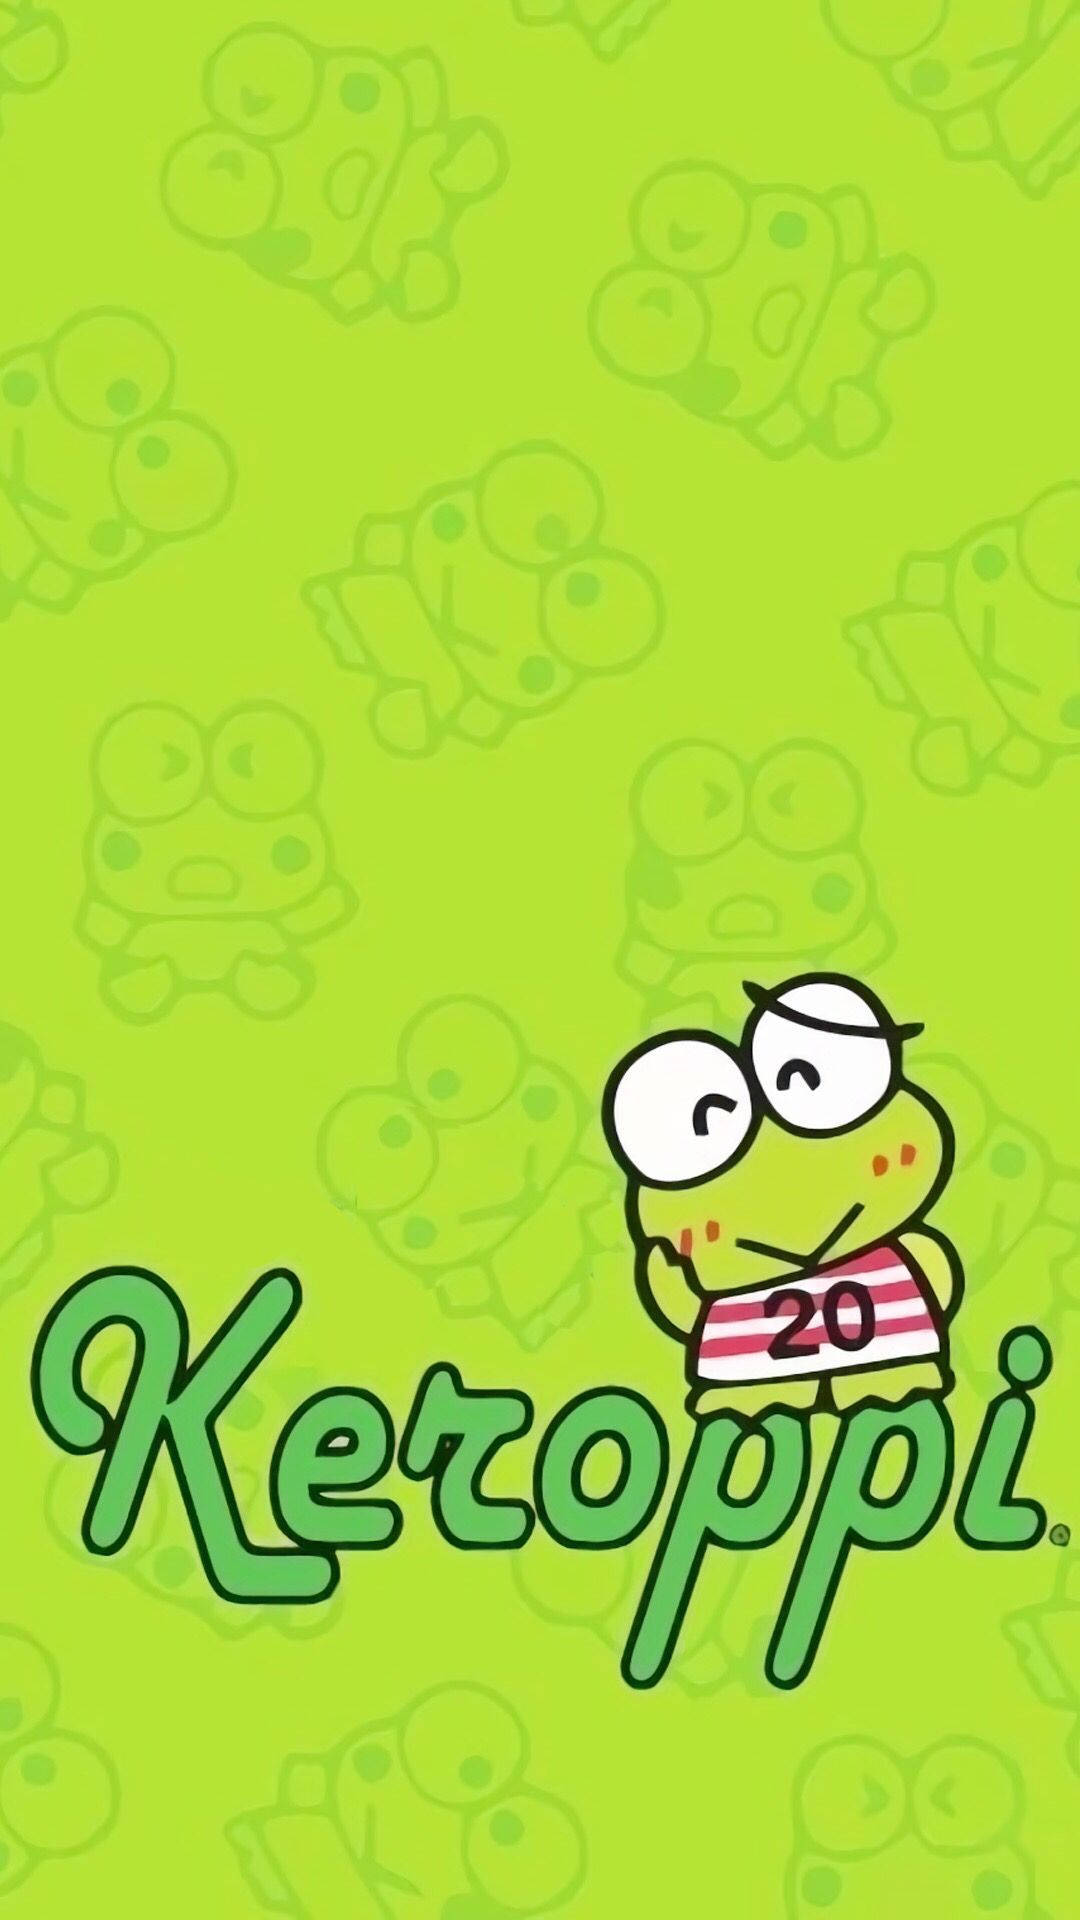 Keroppi wallpaper for android - Keroppi